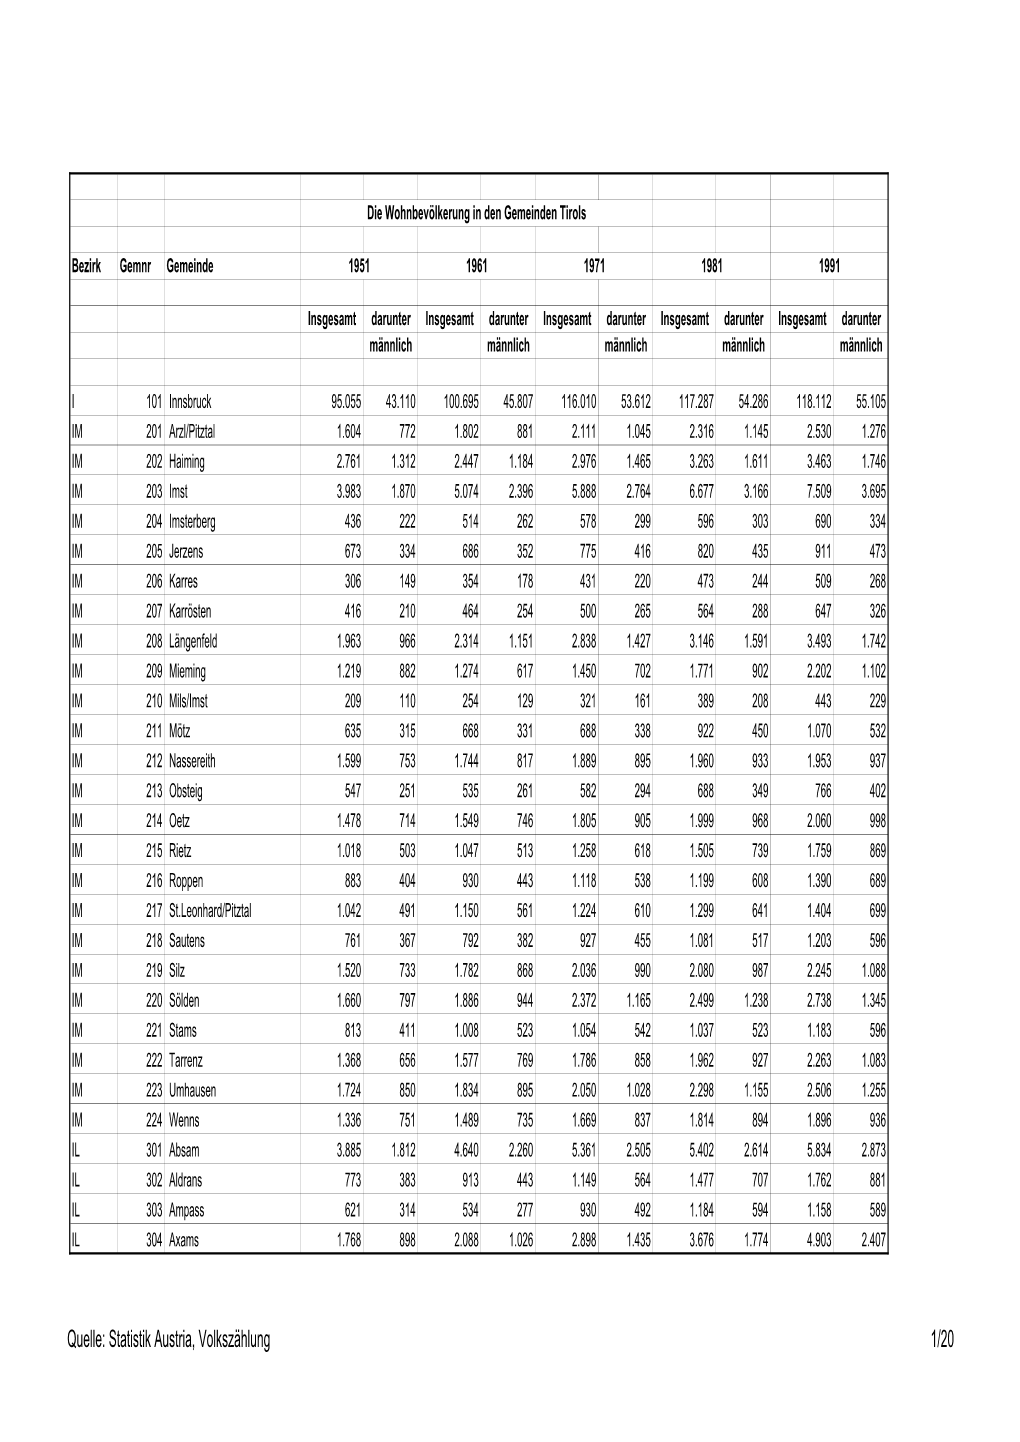 Quelle: Statistik Austria, Volkszählung 1/20 Die Wohnbevölkerung in Den Gemeinden Tirols